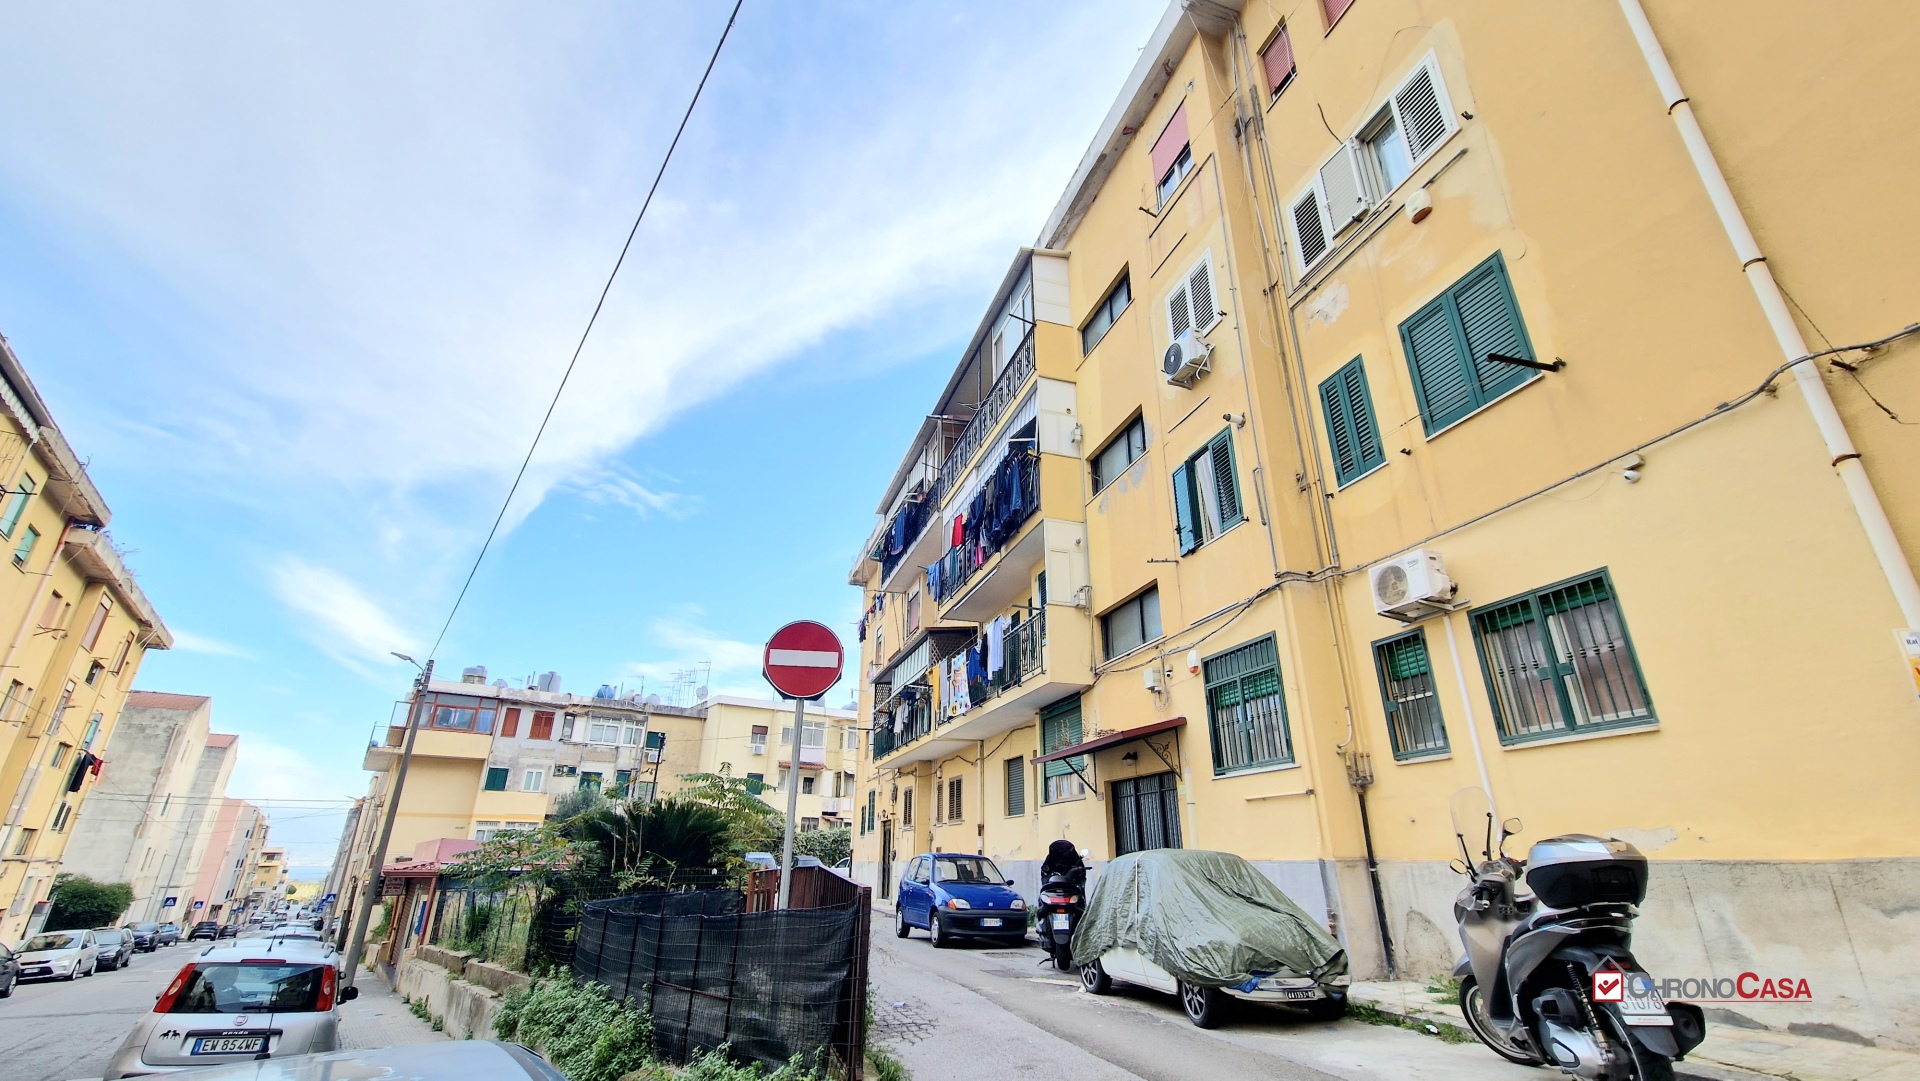 Appartamento in vendita a Messina, 3 locali, prezzo € 67.000 | PortaleAgenzieImmobiliari.it